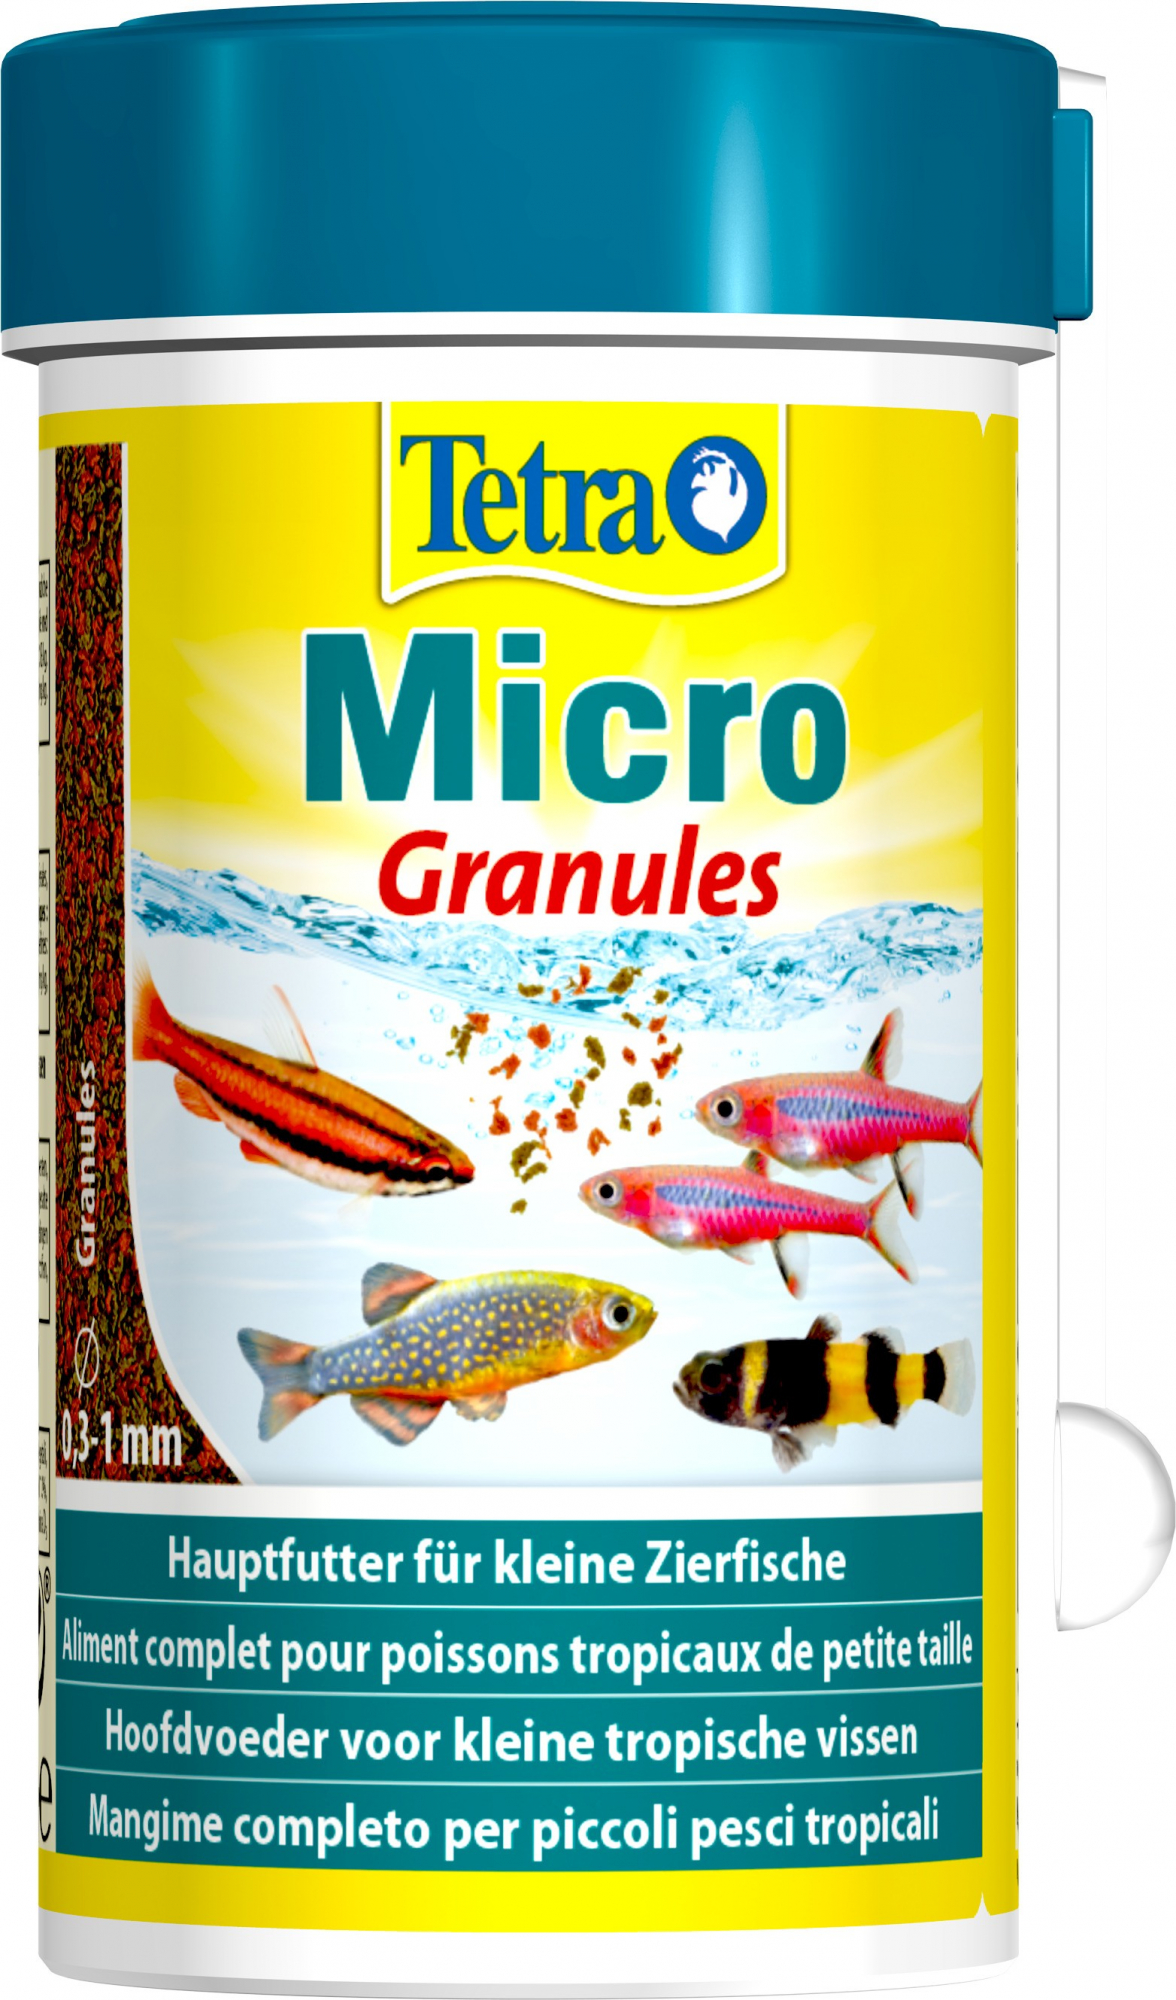 Tetra Micro Granules Futter für kleine Fische